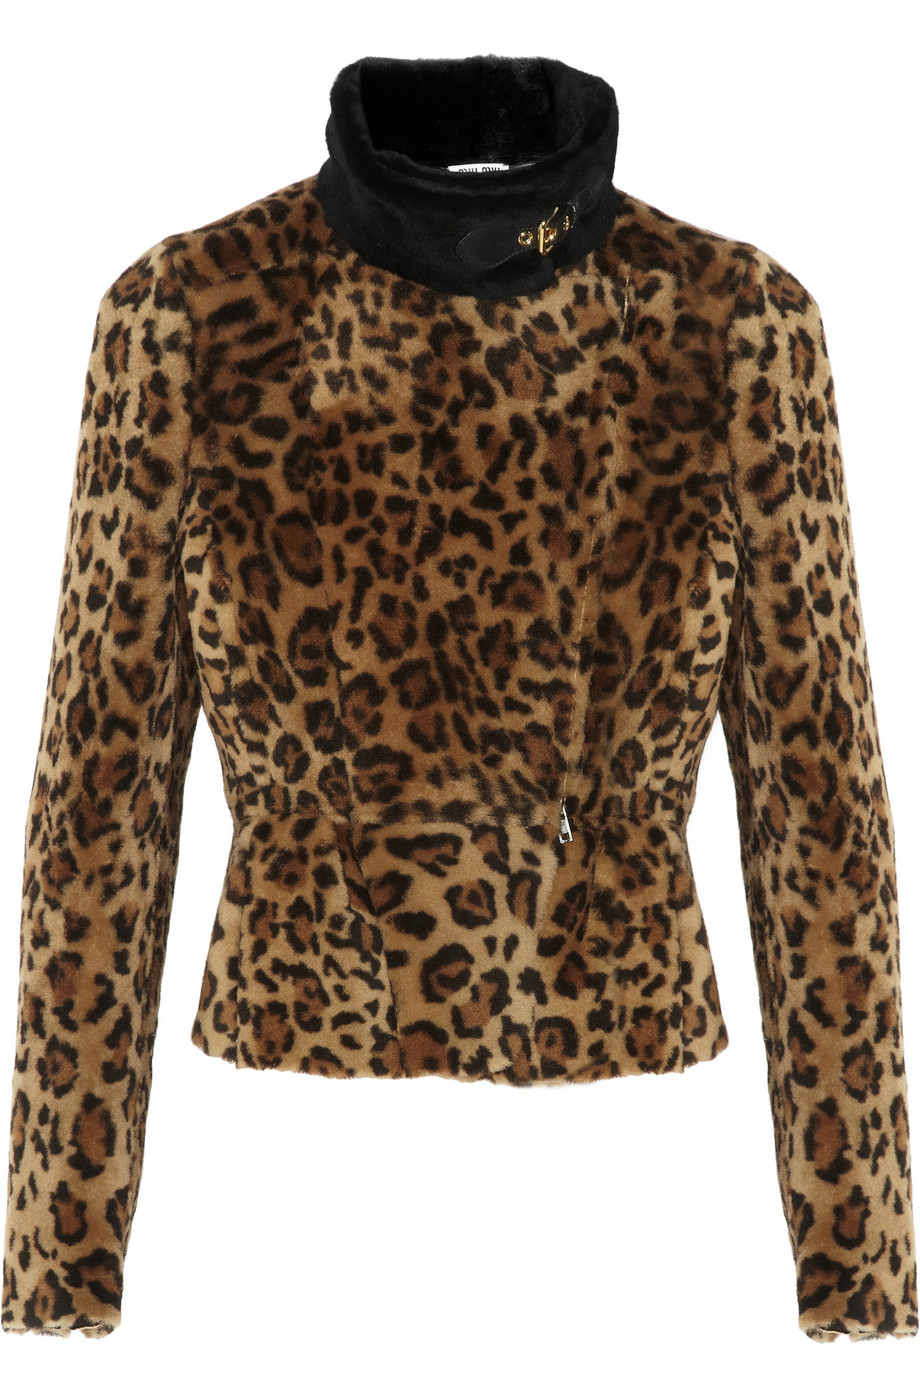 Lyst - Miu Miu Leopard Print Shearling Jacket in Brown